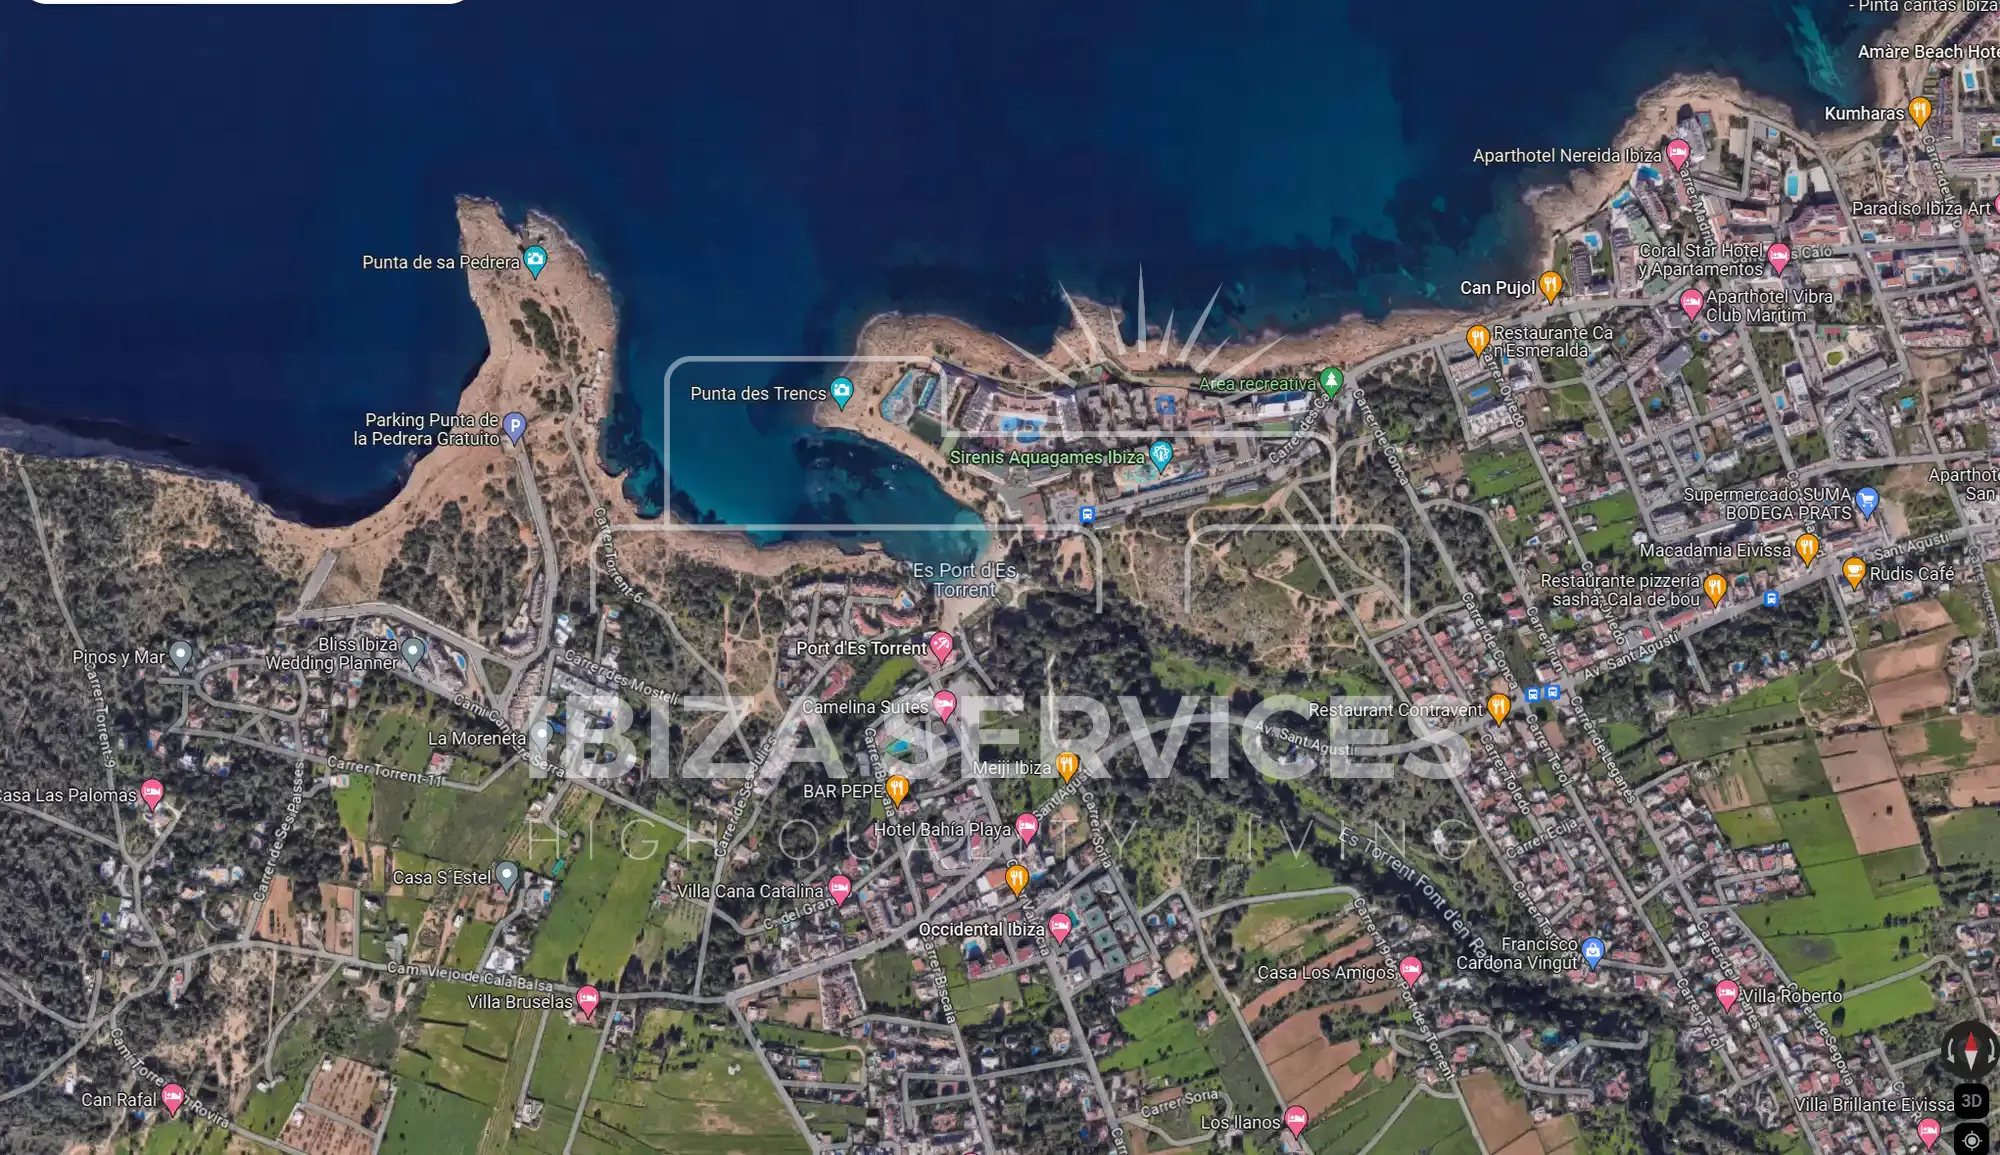 Opportunité de Développement Immobilier Exceptionnelle à Port des Torrents, Ibiza